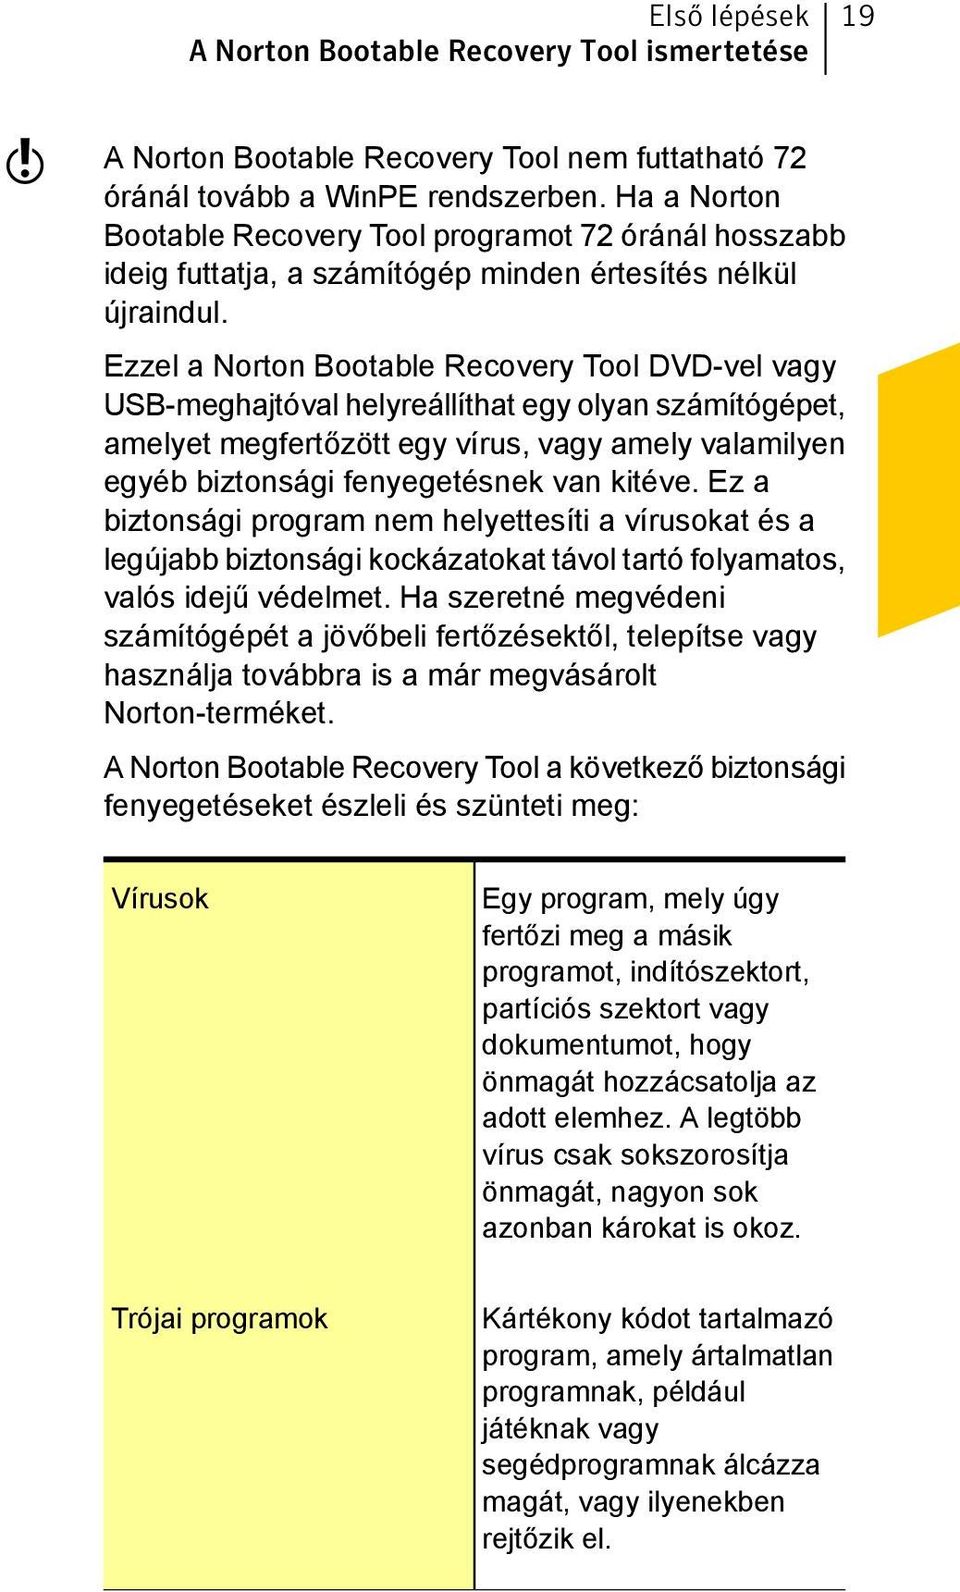 Ezzel a Norton Bootable Recovery Tool DVD-vel vagy USB-meghajtóval helyreállíthat egy olyan számítógépet, amelyet megfertőzött egy vírus, vagy amely valamilyen egyéb biztonsági fenyegetésnek van